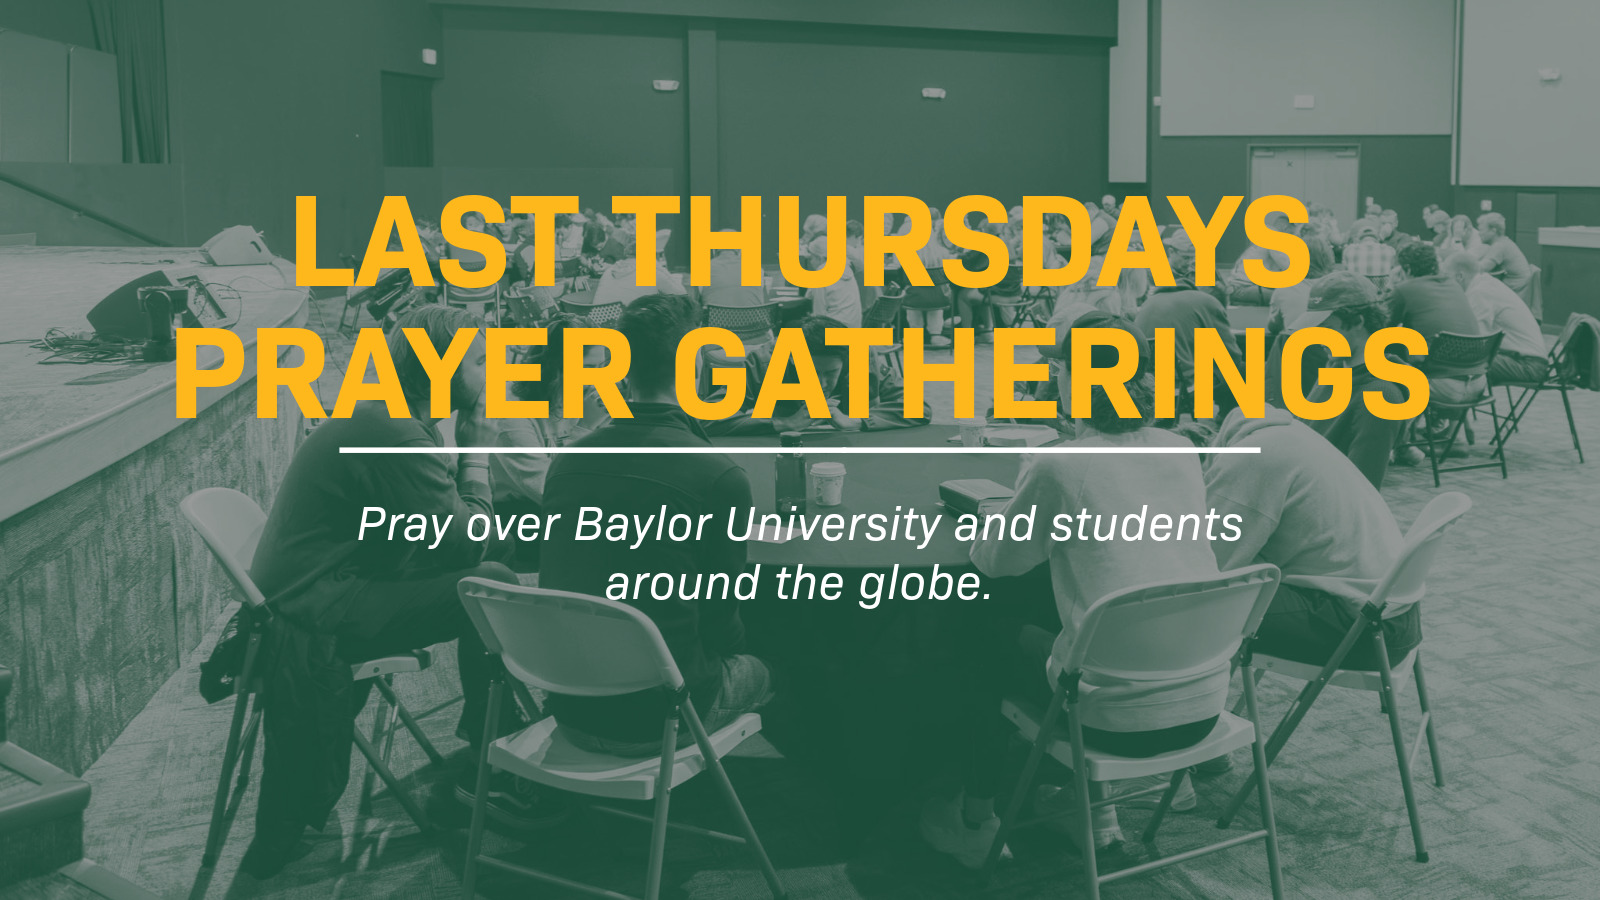 Attend a Last Thursdays Prayer Gathering